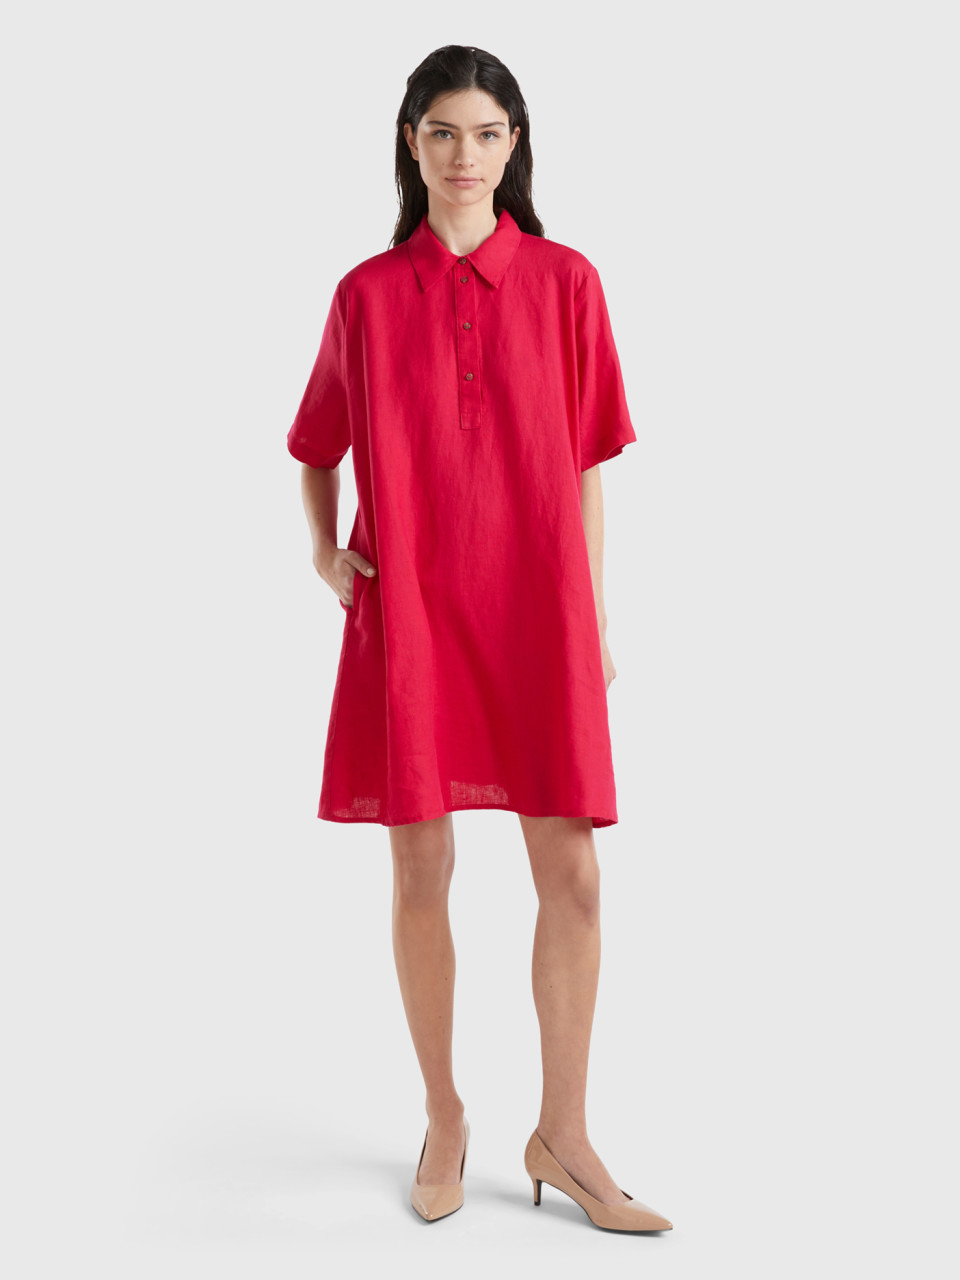 Benetton, Cropped Dress In Pure Linen, Cyclamen, Women